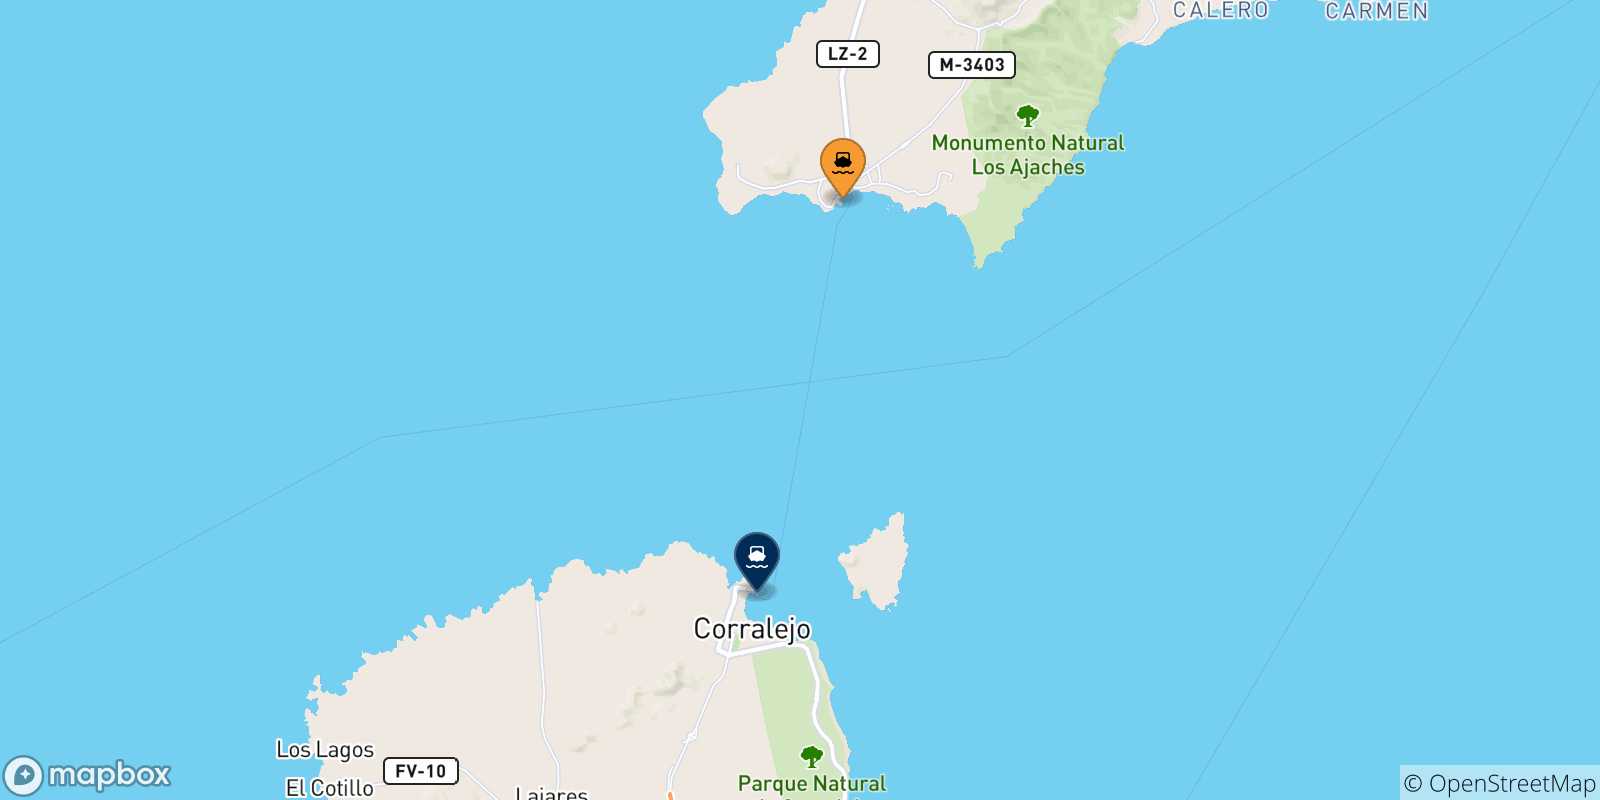 Mappa delle possibili rotte tra Playa Blanca (Lanzarote) e le Isole Canarie